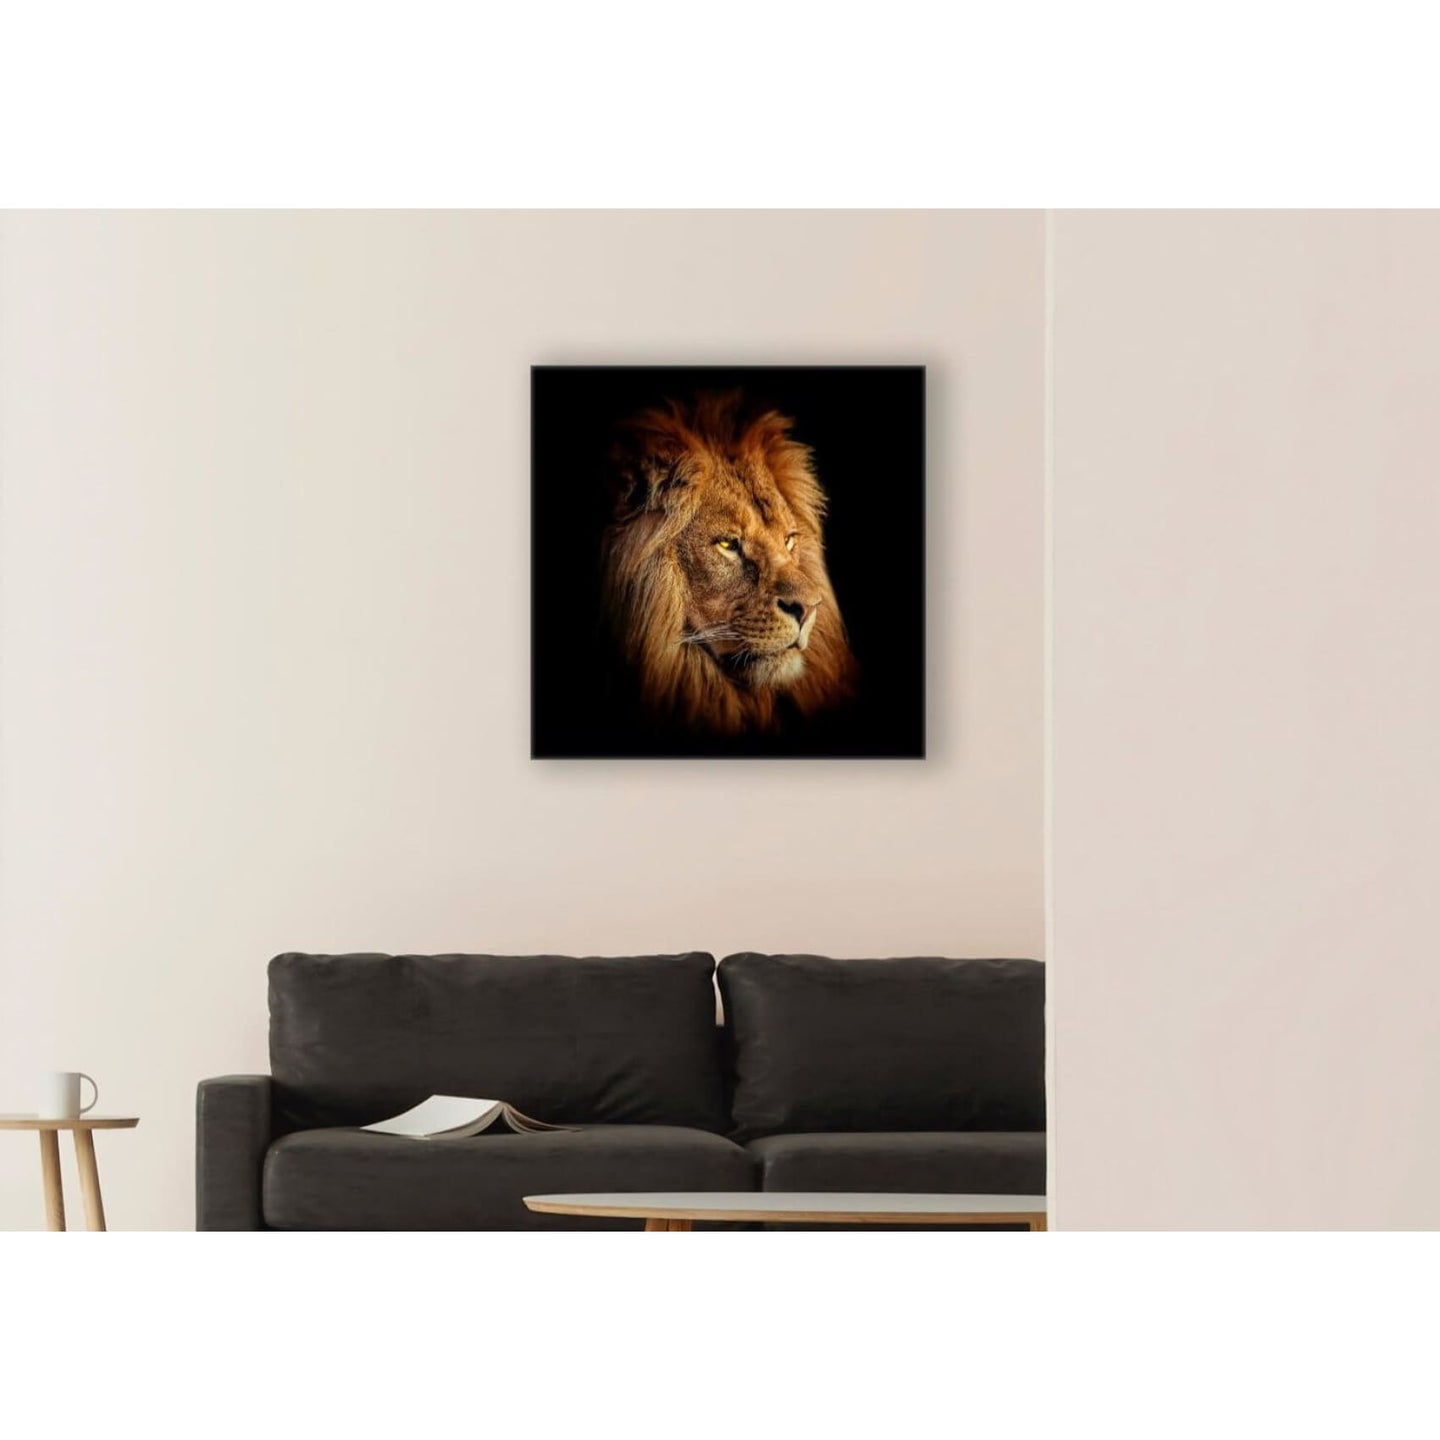 cuadro decorativo, decoración, sala, estudio, habitación, león, animal